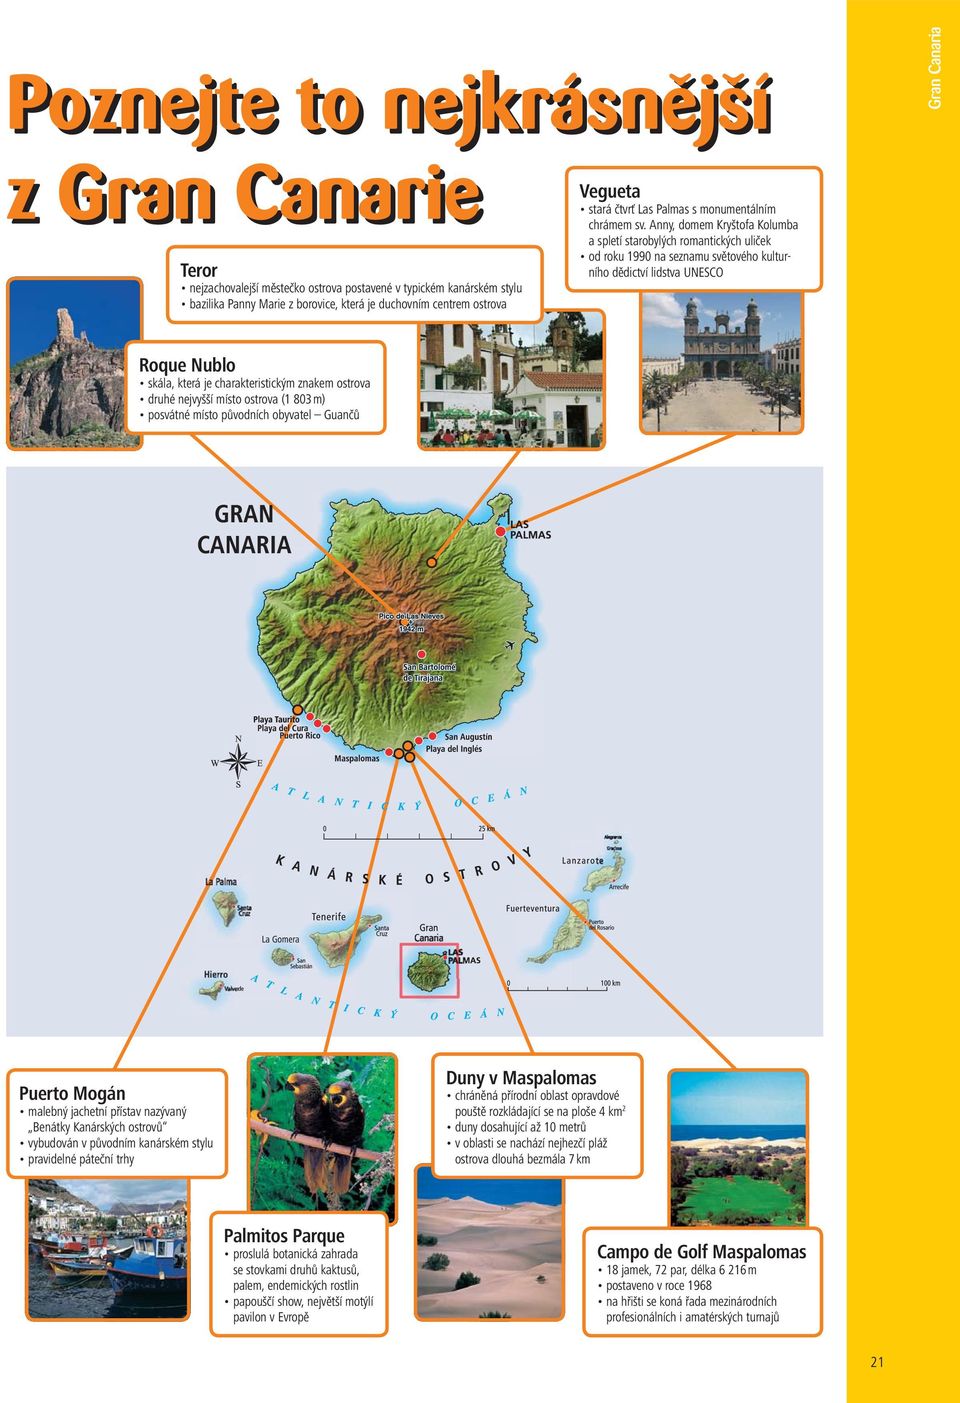 Anny, domem Kryštofa Kolumba a spletí starobylých romantických uliček od roku 1990 na seznamu světového kulturního dědictví lidstva UNESCO Roque Nublo skála, která je charakteristickým znakem ostrova